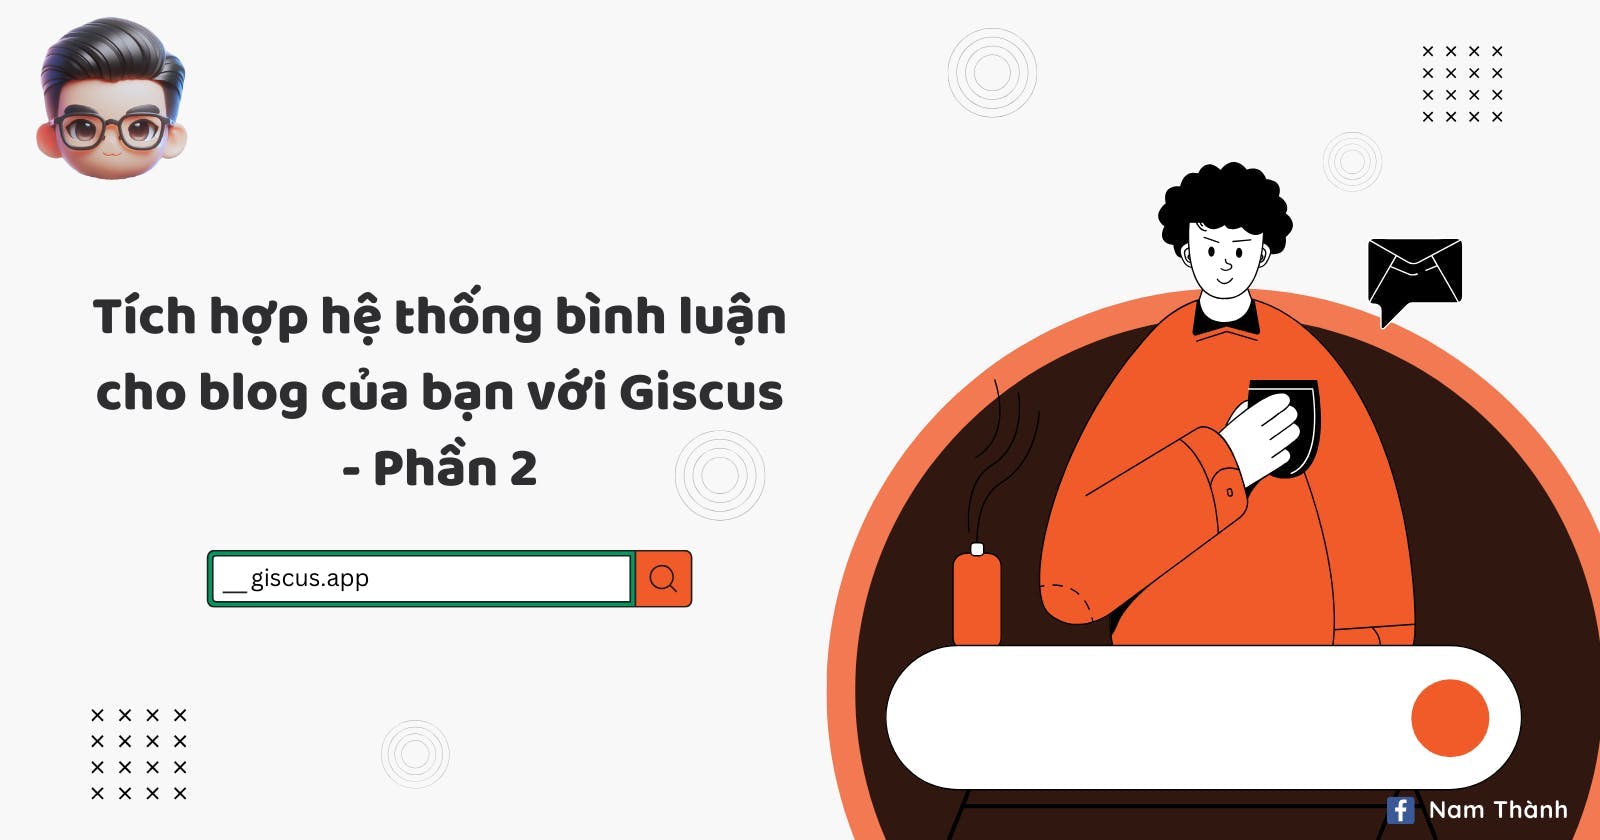 Tích hợp hệ thống bình luận cho blog của bạn với Giscus - Phần 2